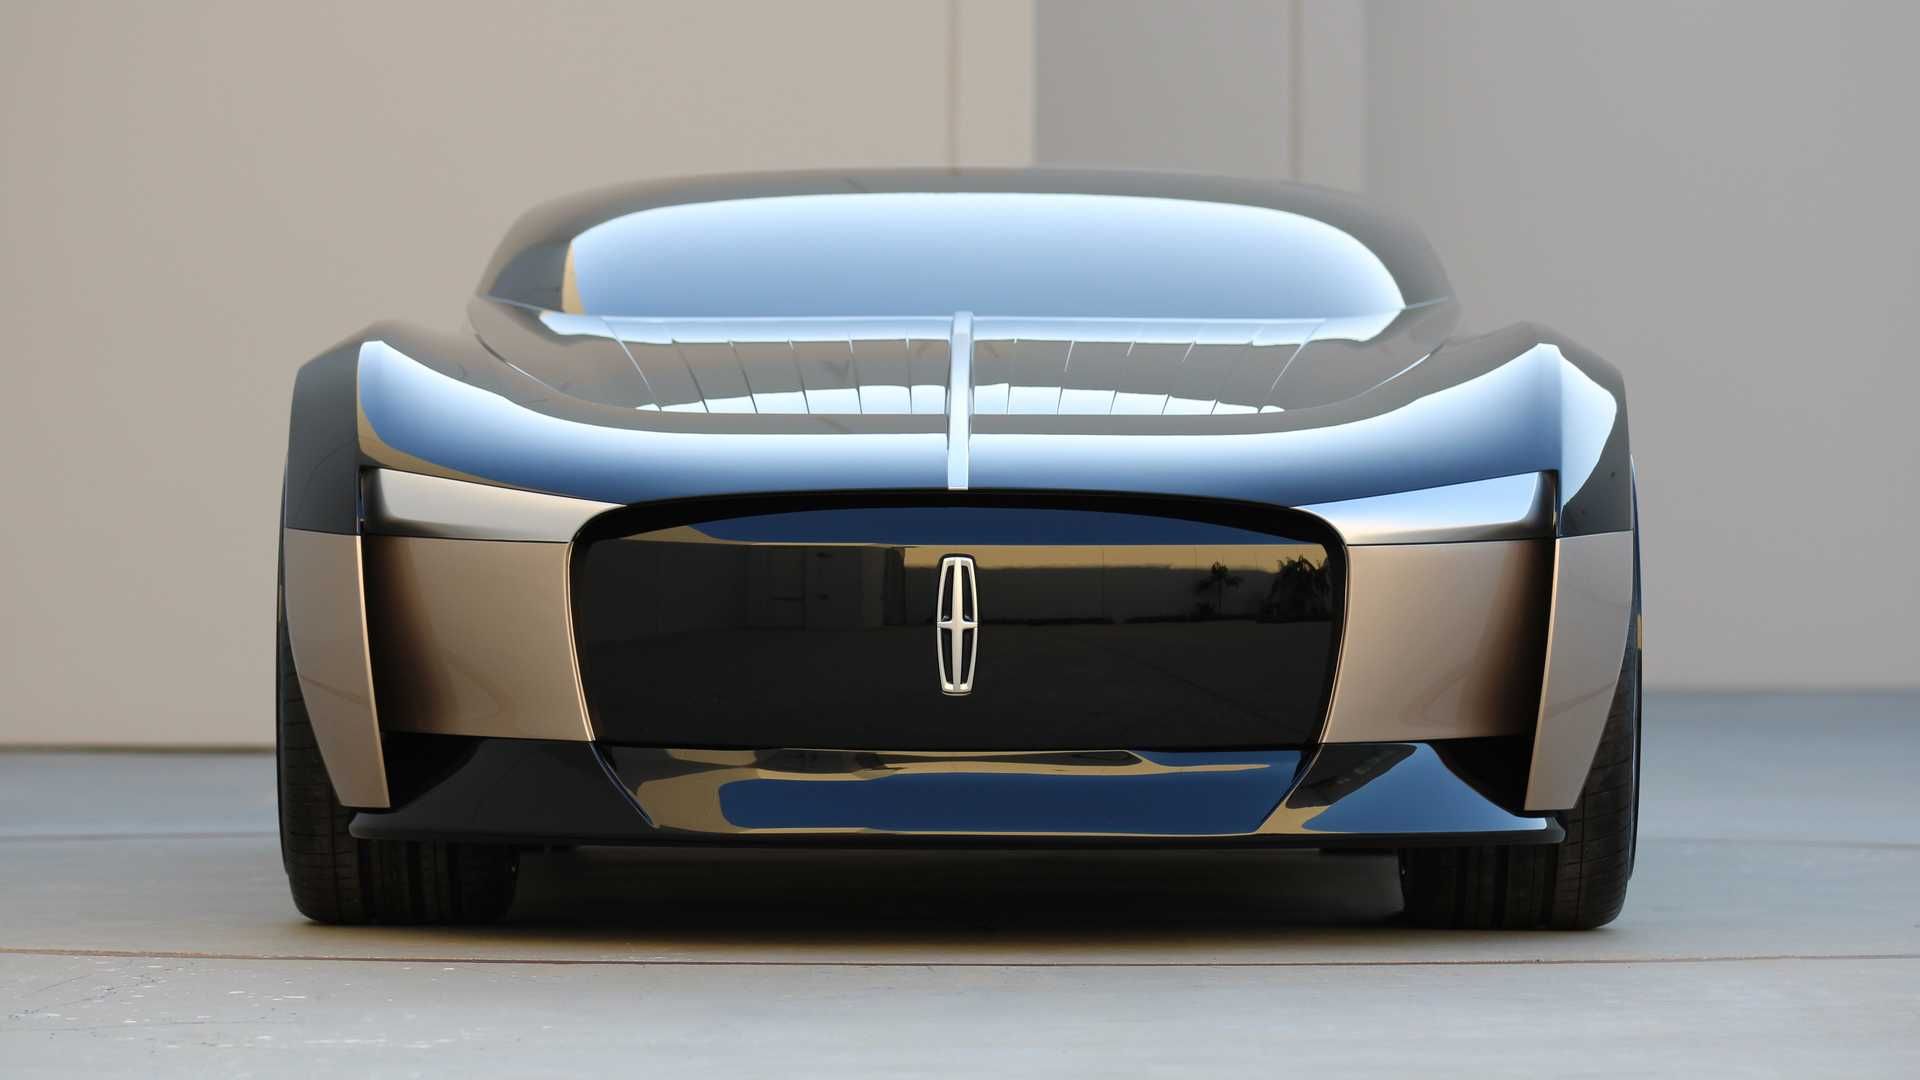 نمای جلو خودروی مفهومی لینکلن انیورساری / Lincoln Anniversary Concept